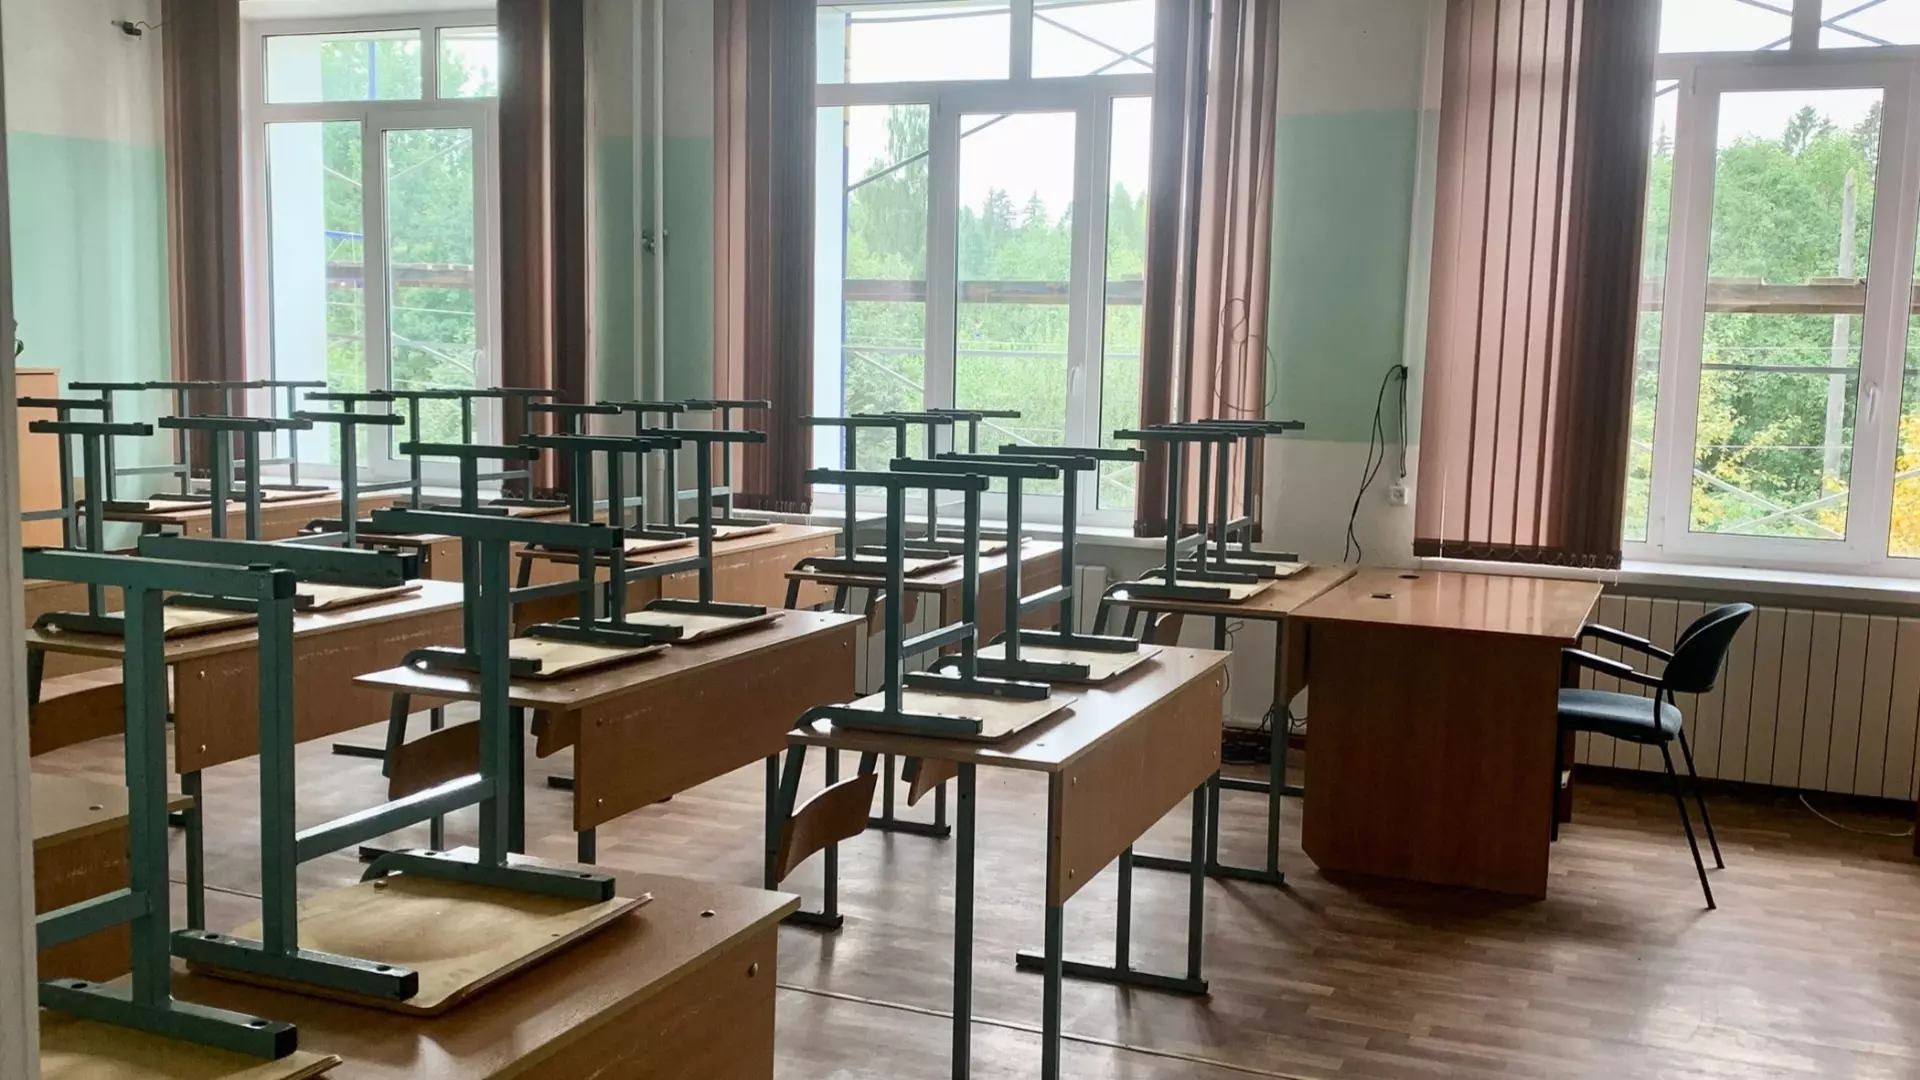 9,6% нижегородских детсадов и школ закрылись на карантин